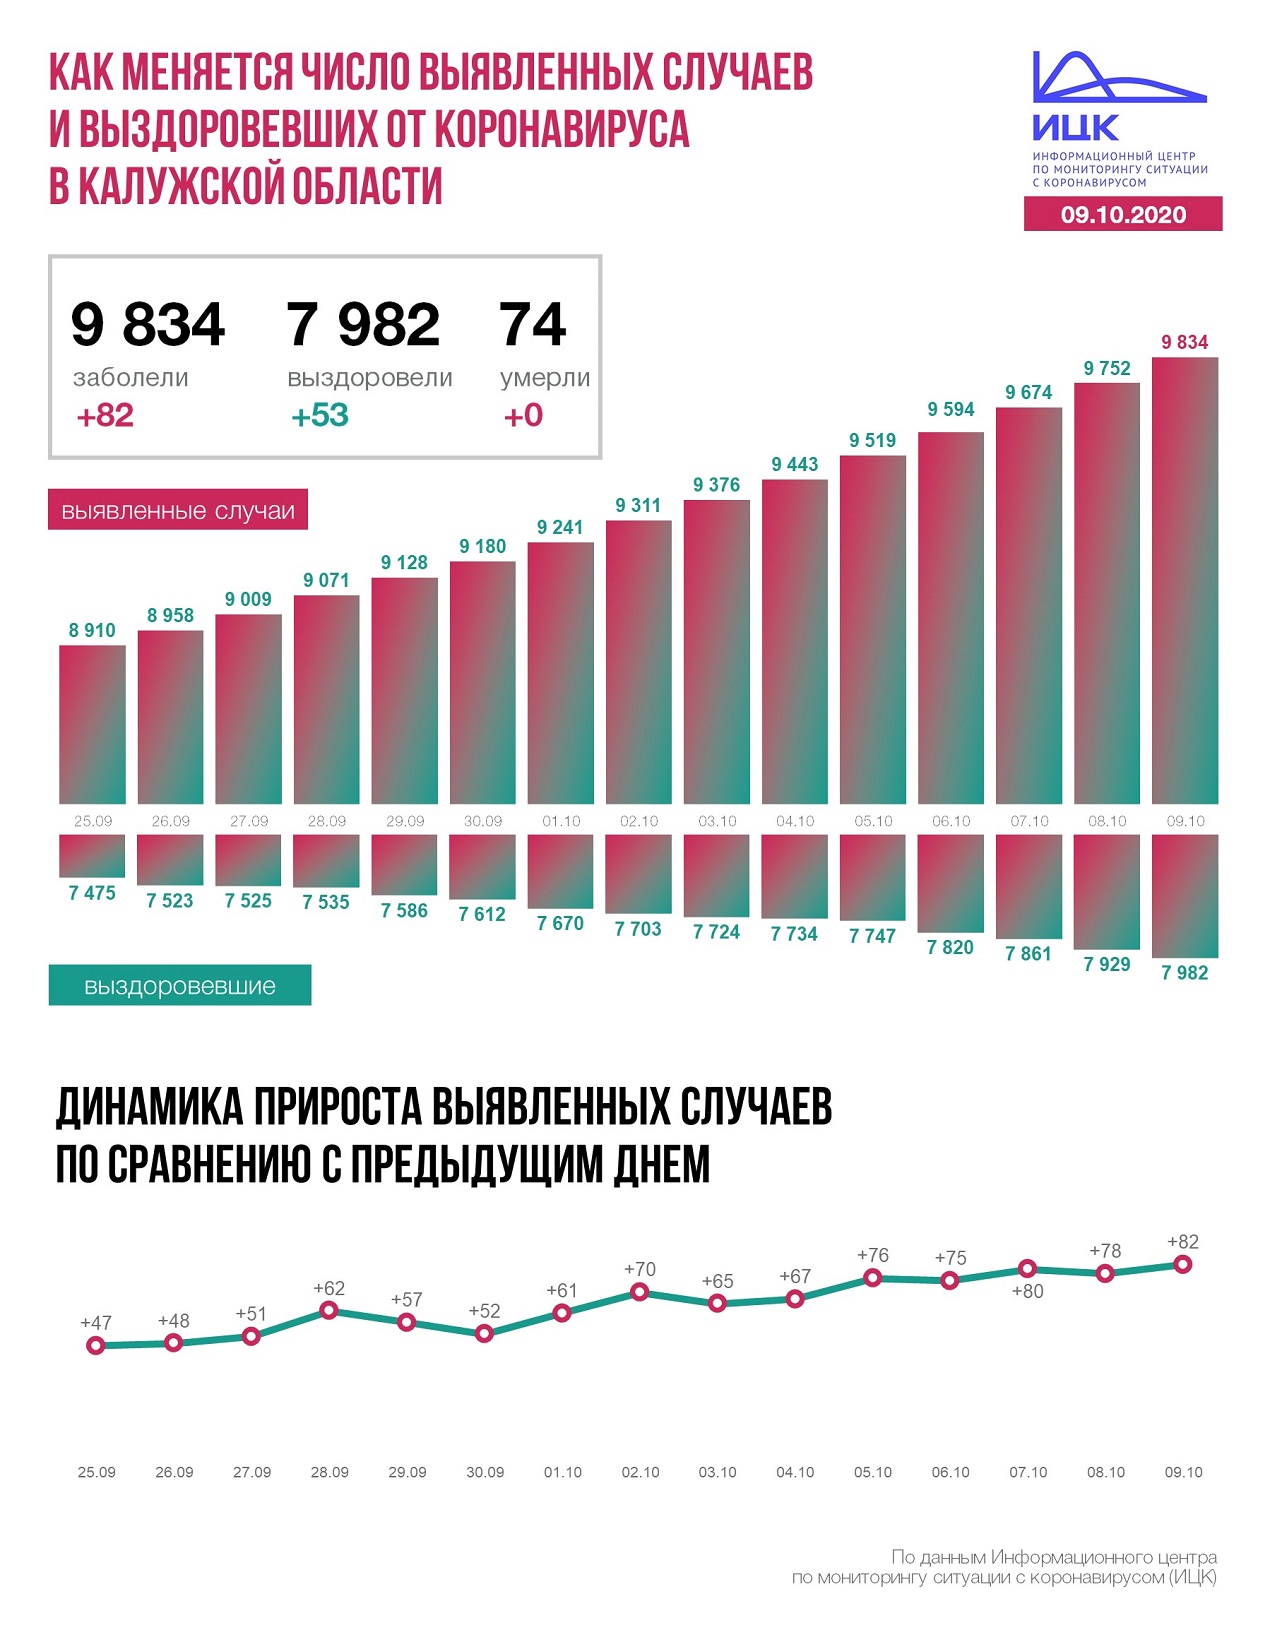 Официальные данные по коронавирусу в Калужской области на 9 октября 2020 года.